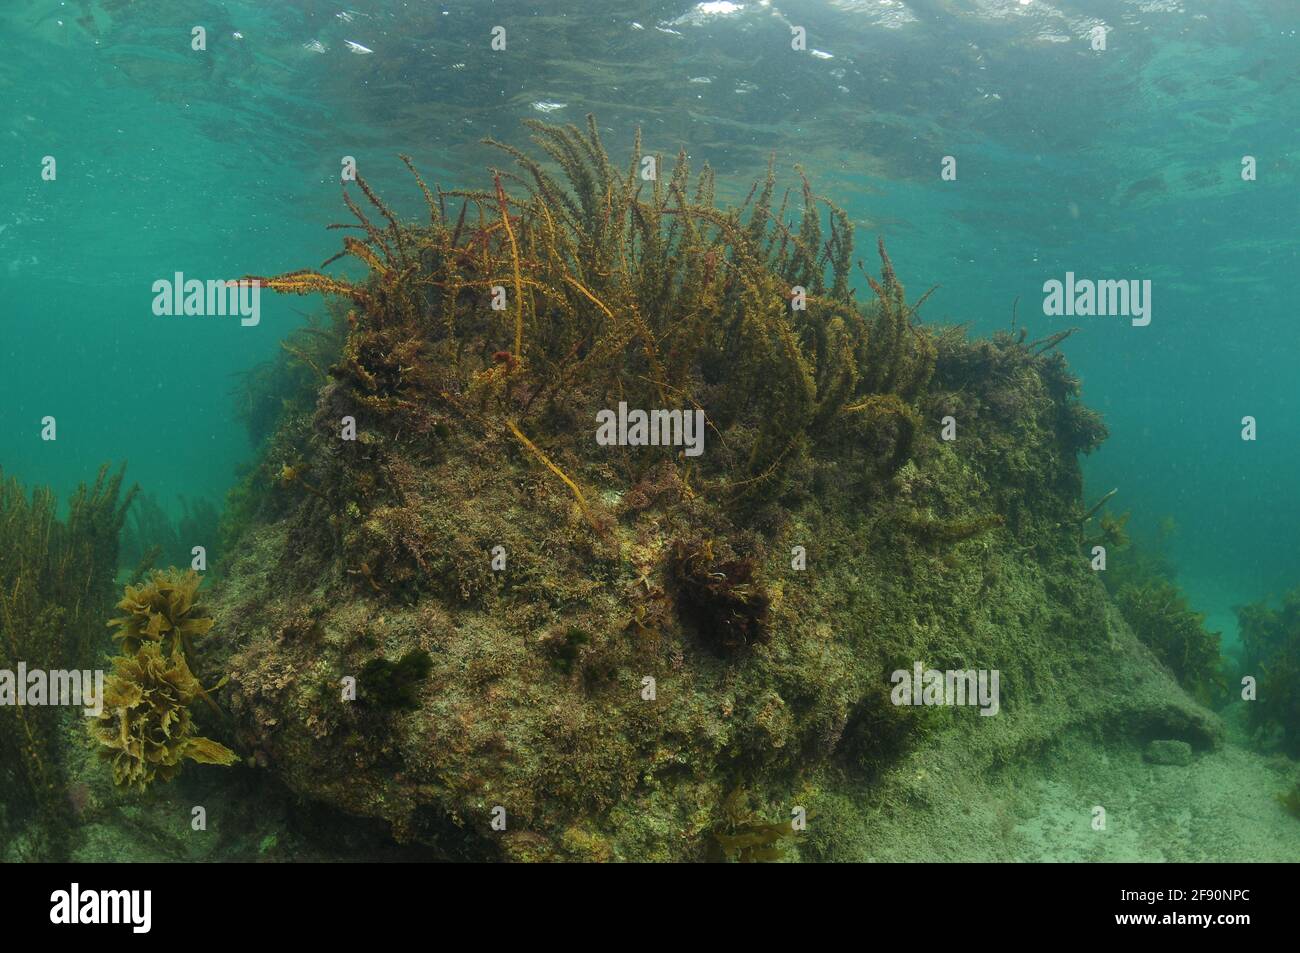 Riesiger Felsen auf dem Meeresboden im seichten Wasser, dessen Oberseite mit braunen Algen bedeckt ist, reicht fast bis an die Oberfläche. Stockfoto